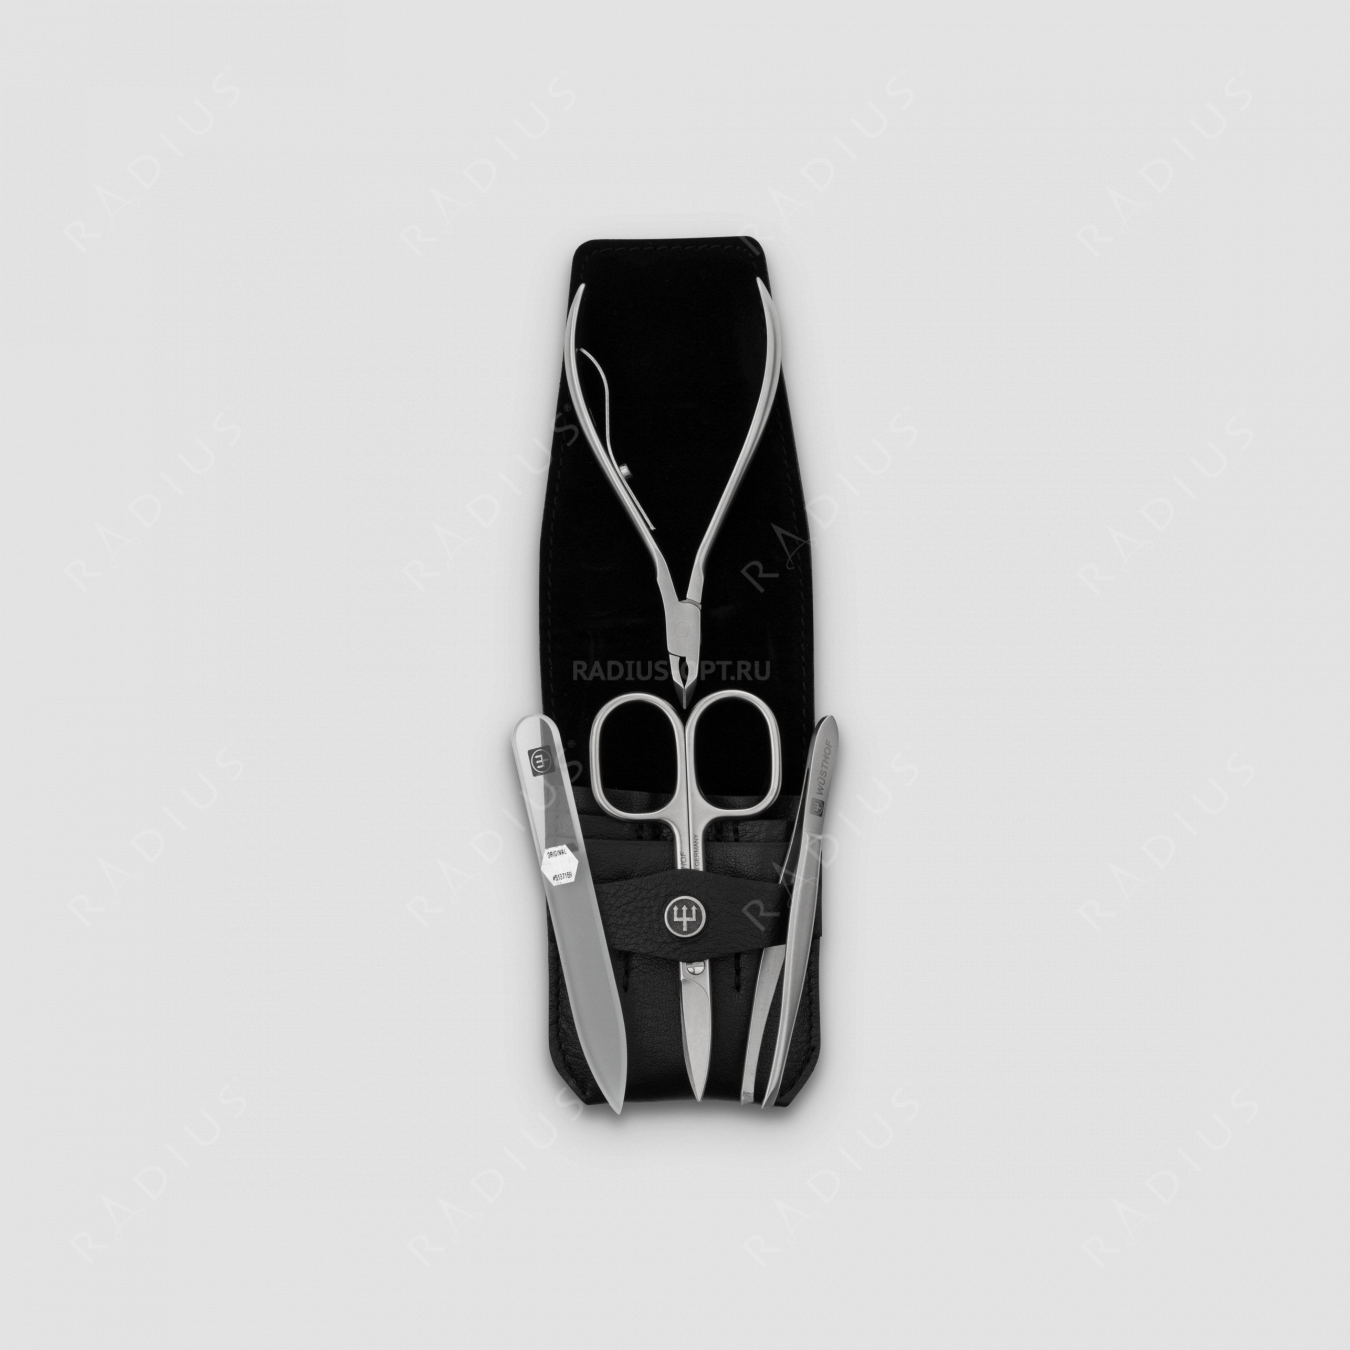 Набор маникюрный 4 предмета в кожаном футляре, цвет черный, сатин, серия Manicure sets, WUESTHOF, Германия